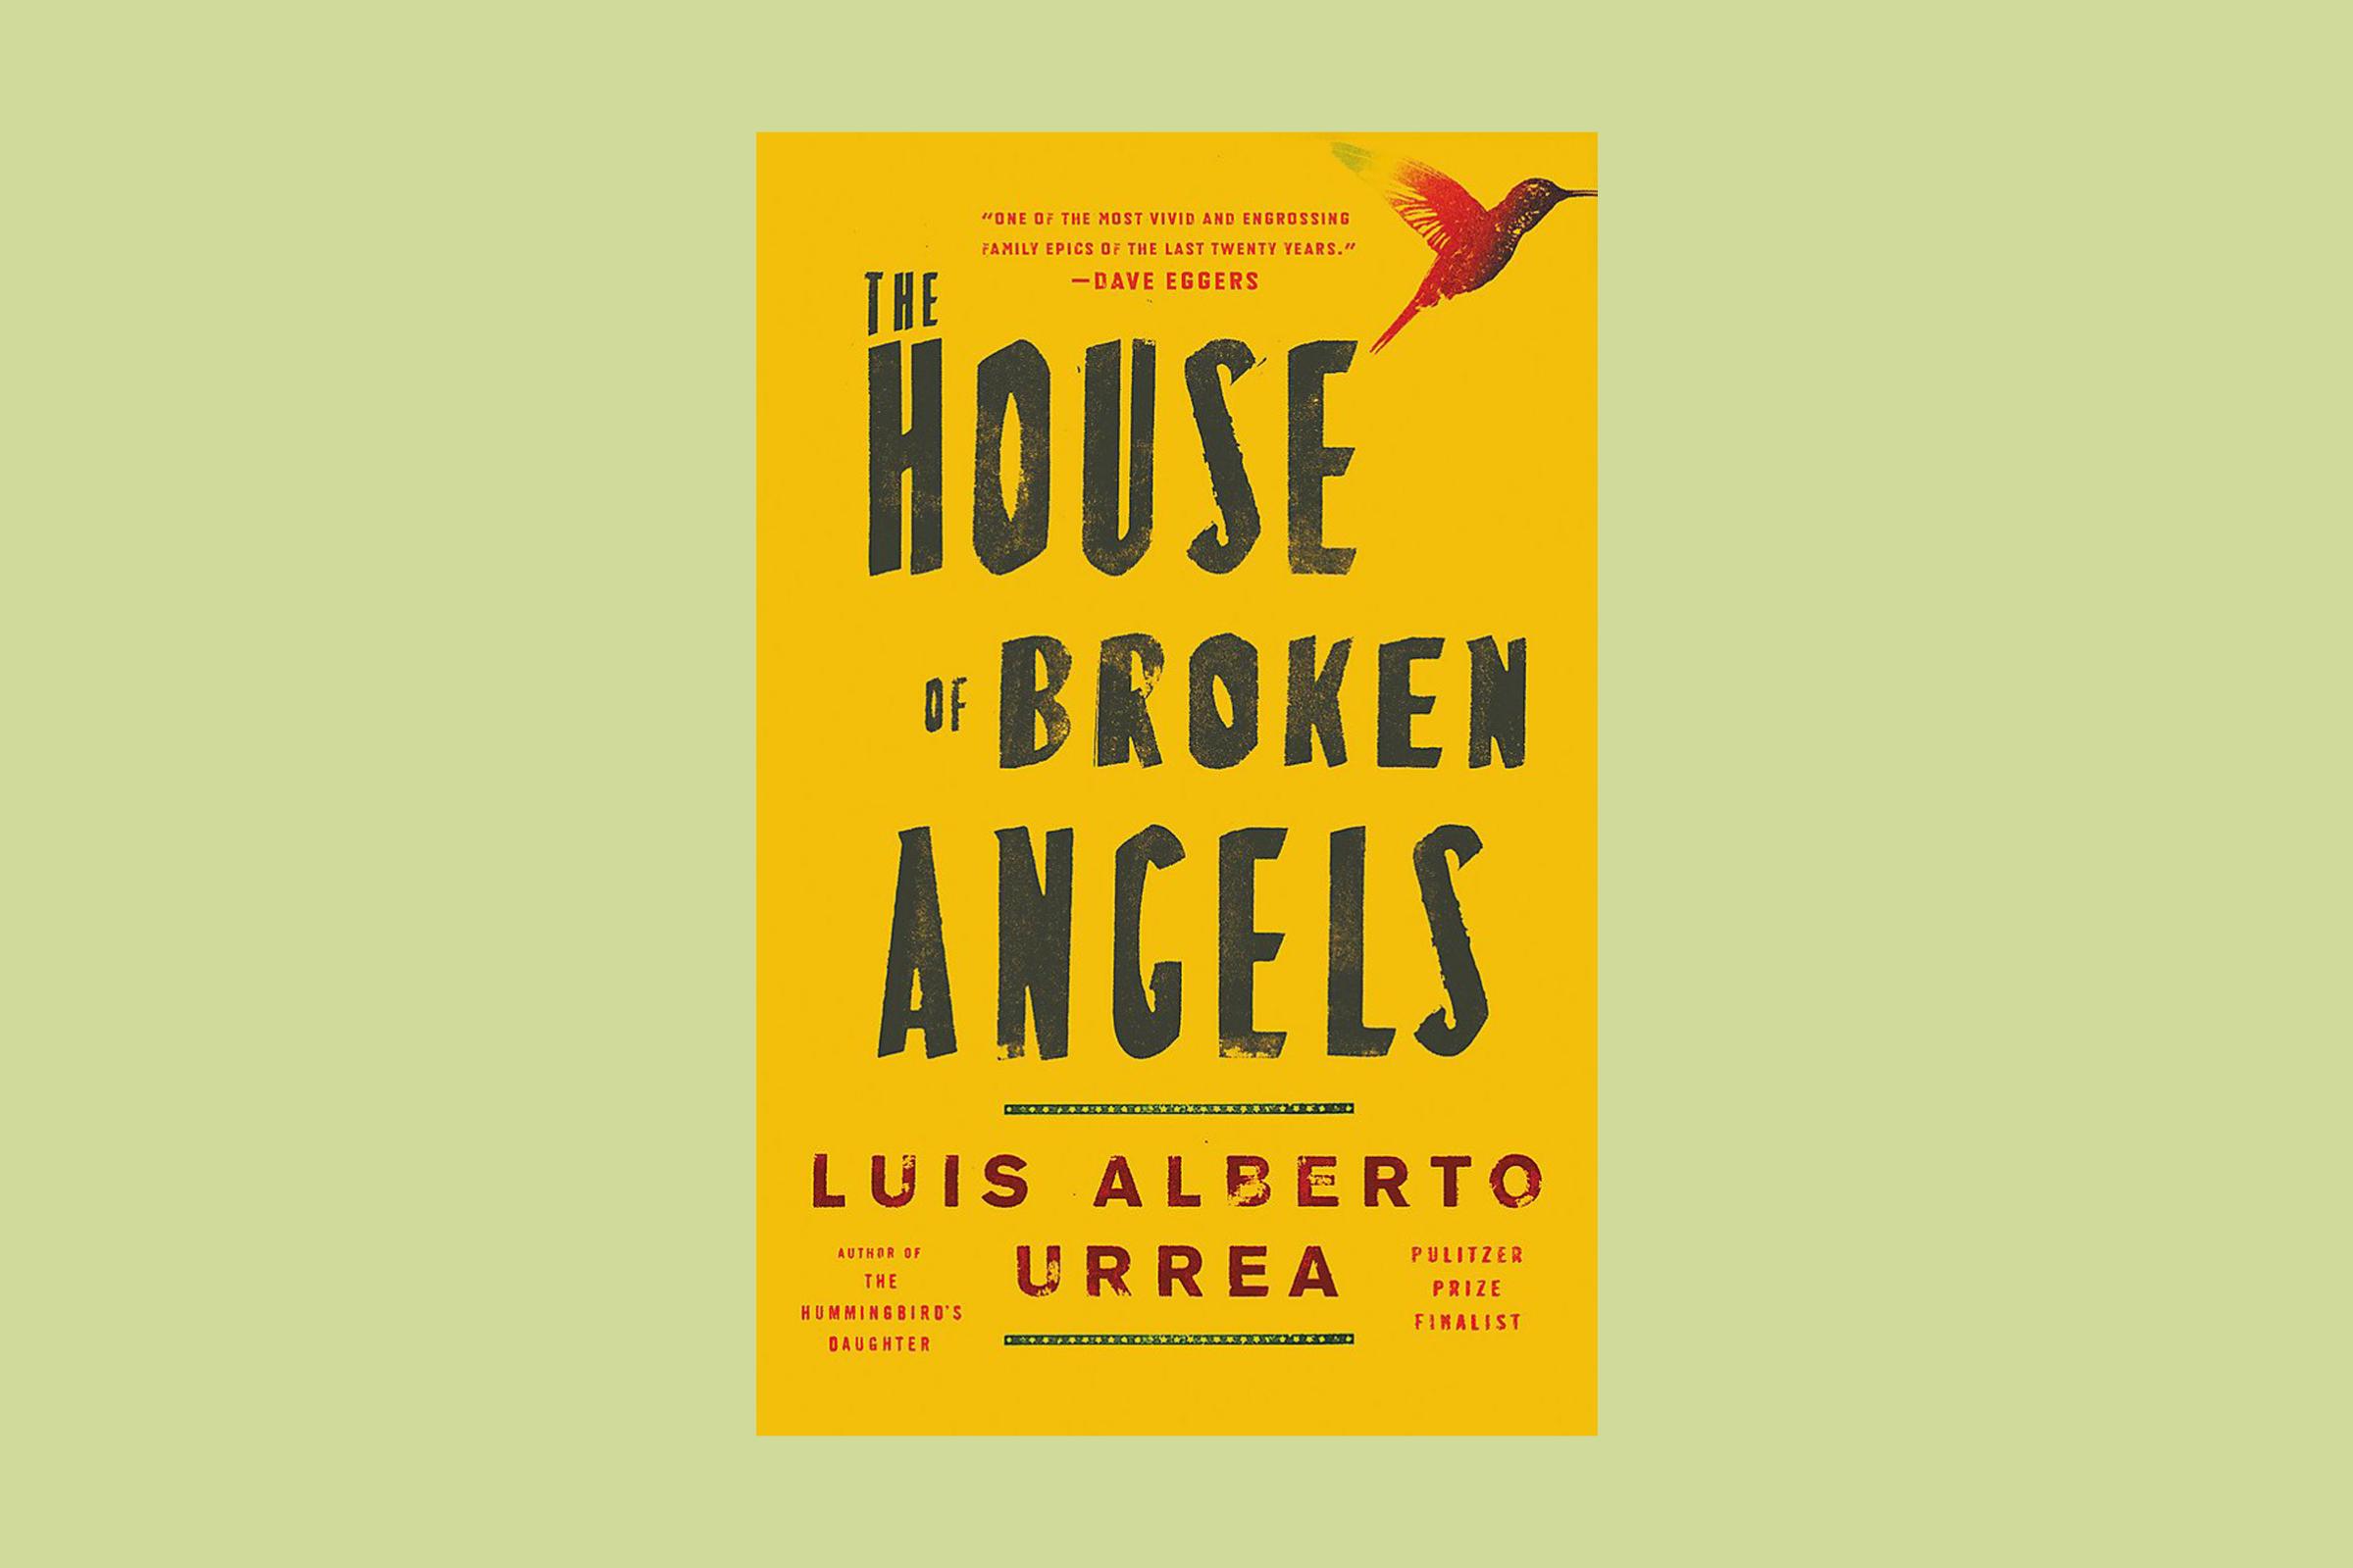 The House of Broken angels, Luis Alberto Urrea